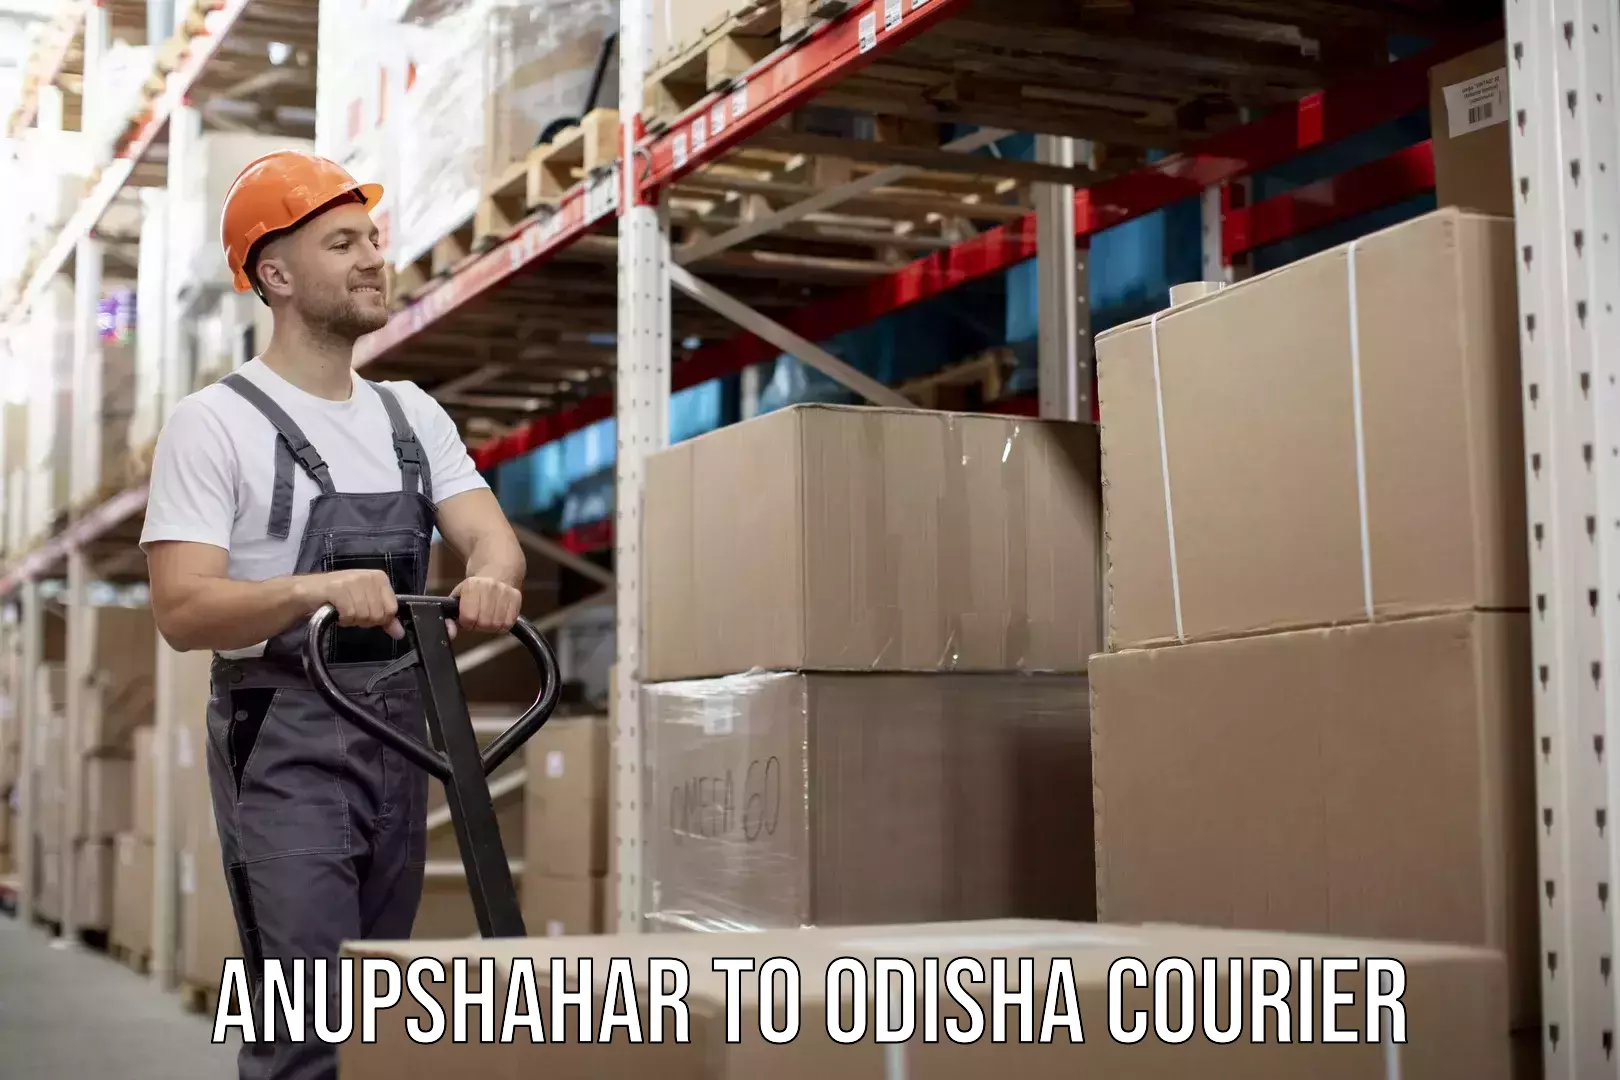 Digital courier platforms Anupshahar to Odisha